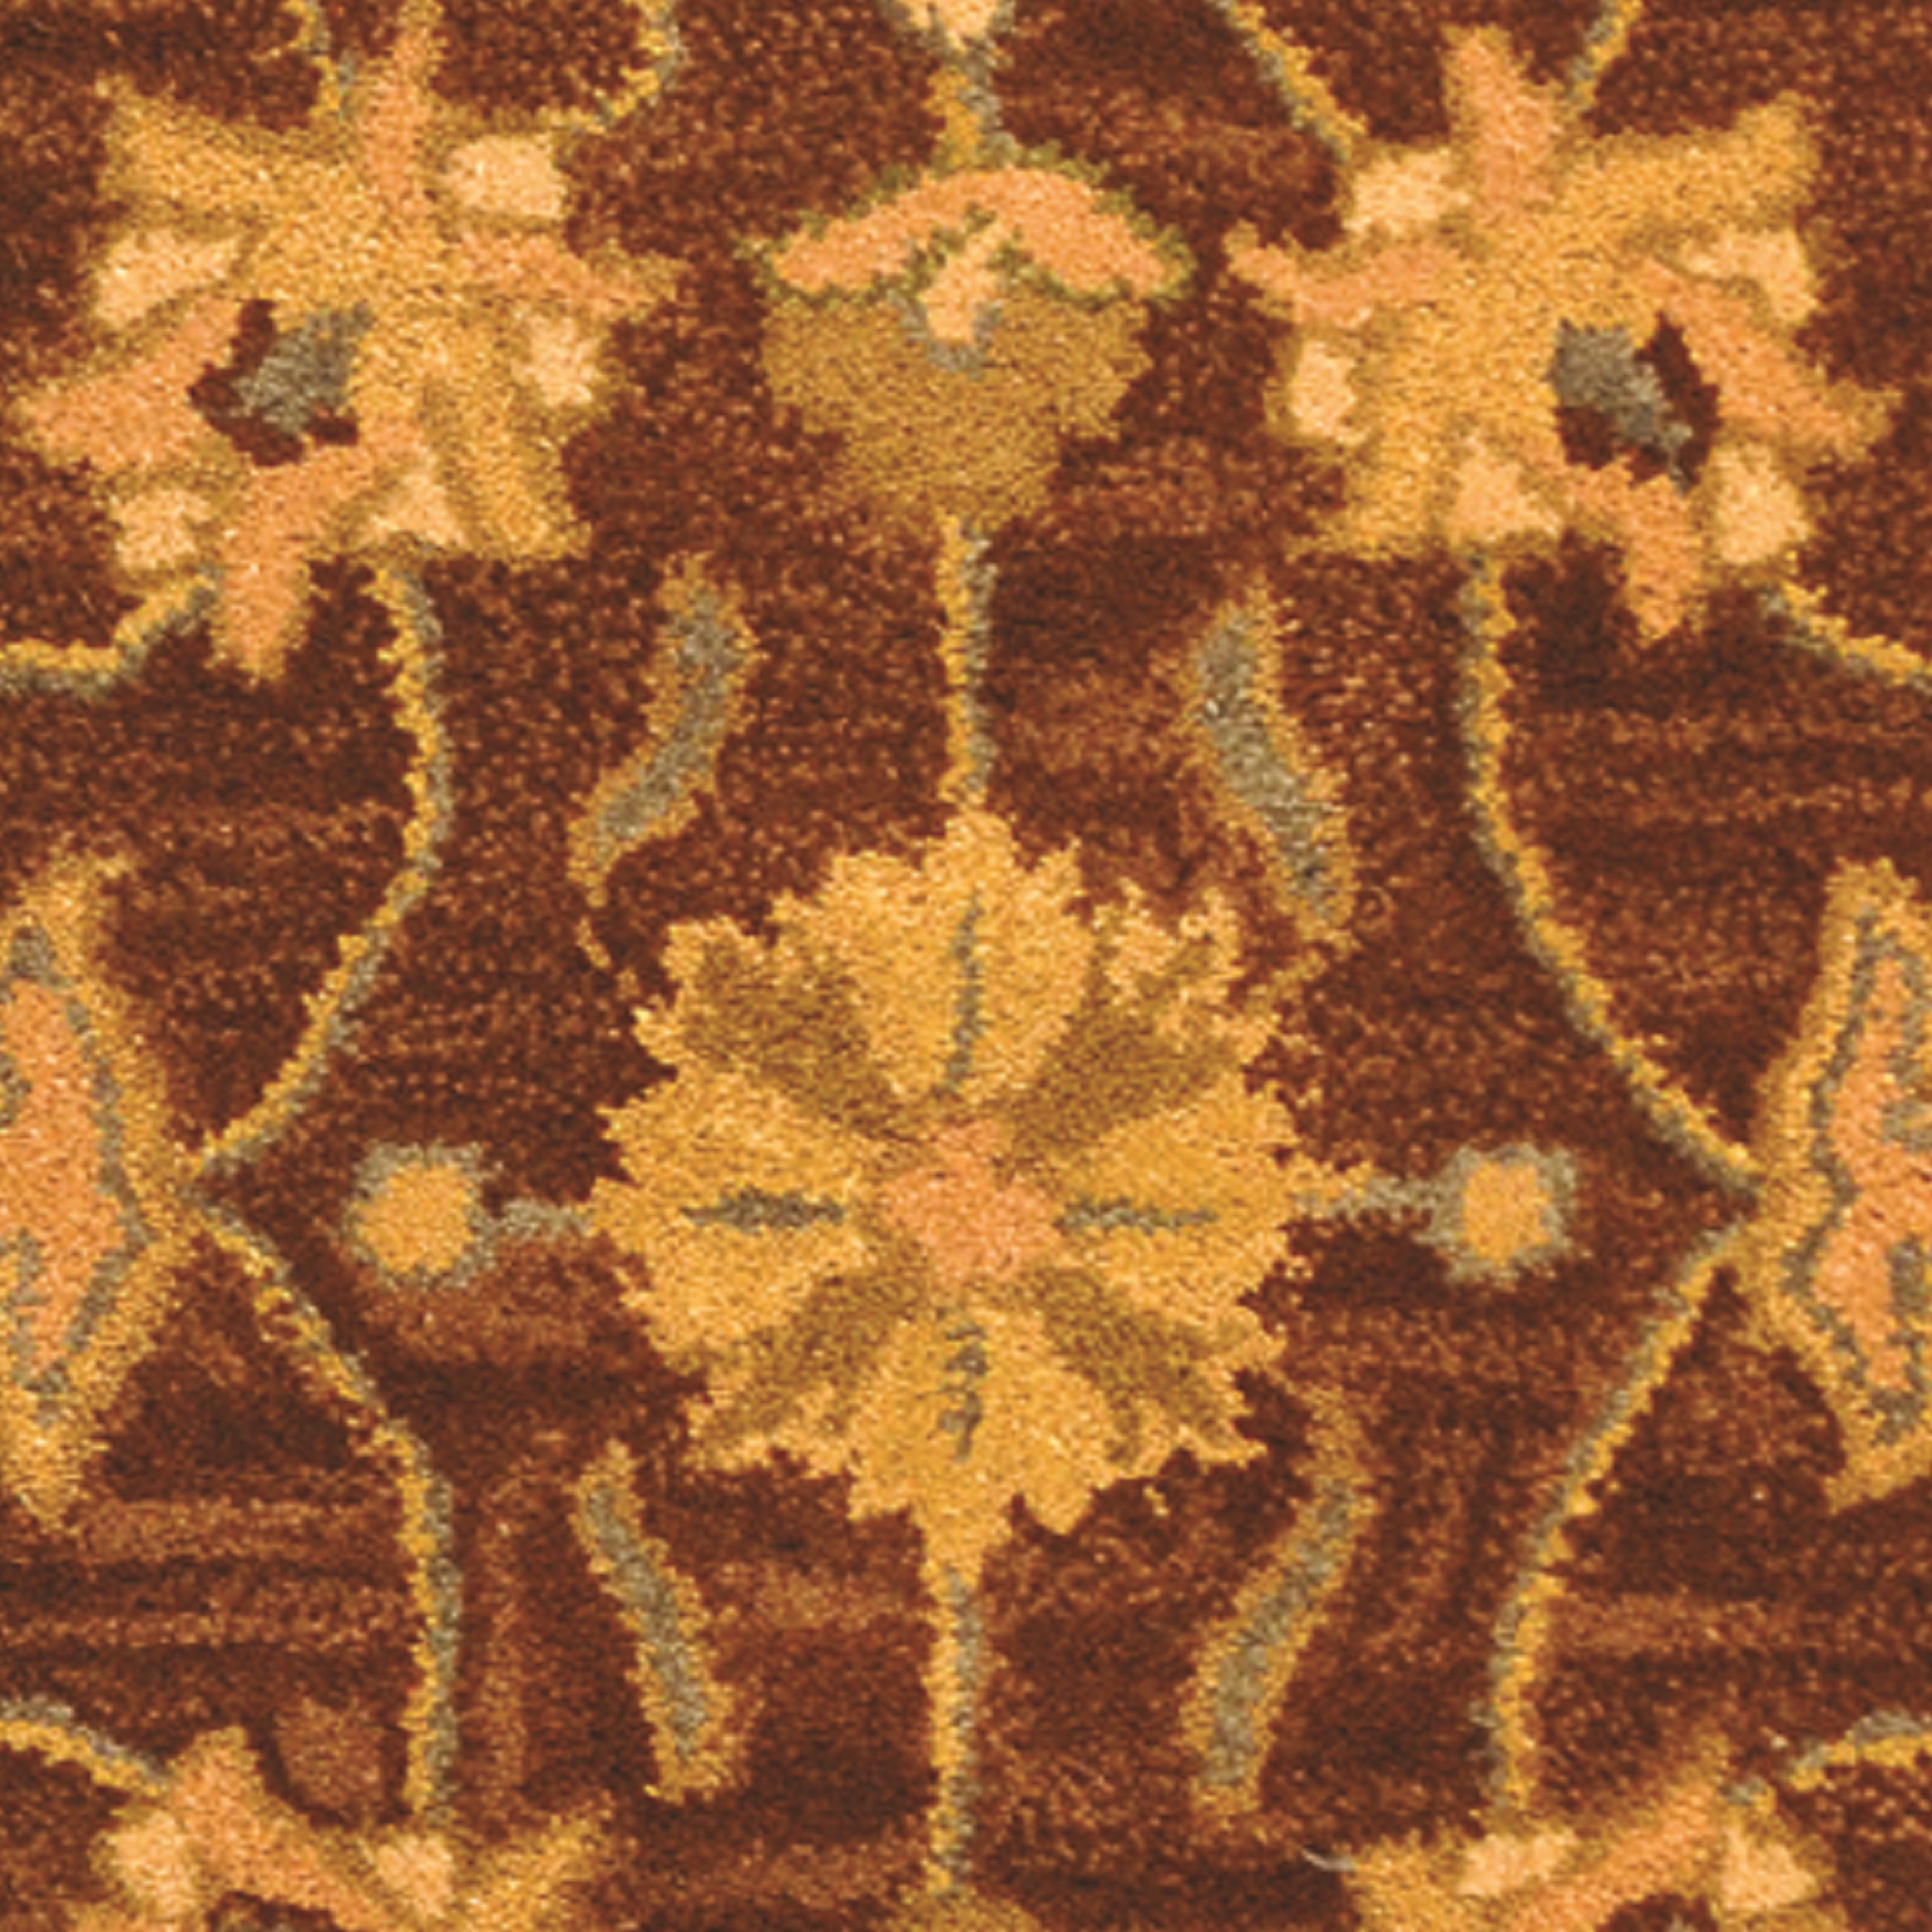 SAFAVIEH Heritage Regis Traditional Wool Runner Rug, Brown/Blue, 2'3" x 12' - image 3 of 4